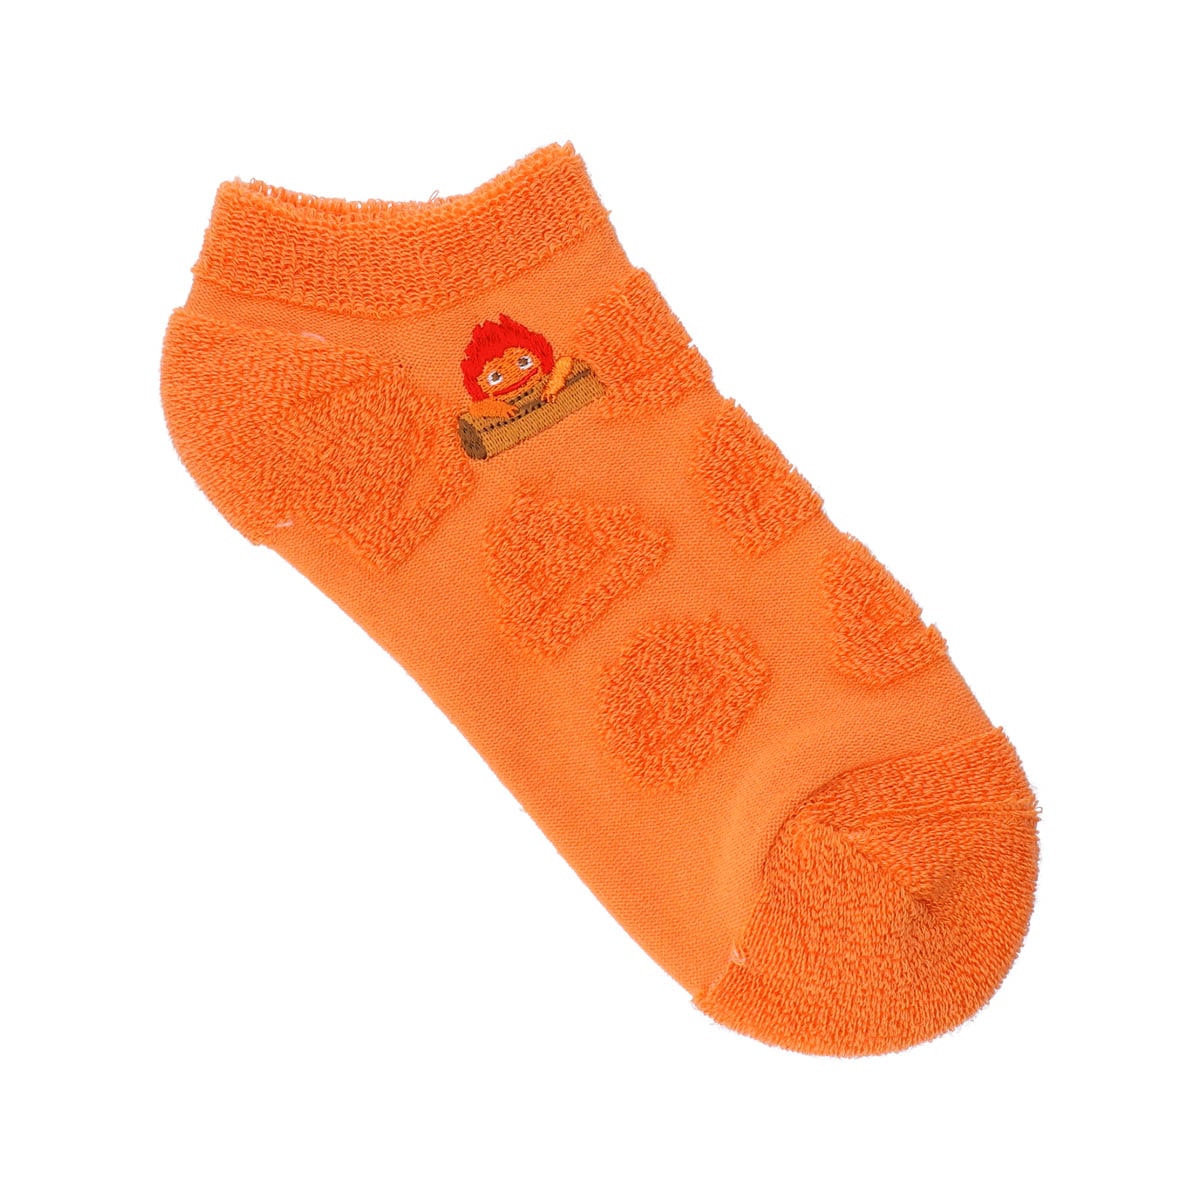 真愛日本 宮崎駿 吉卜力 移動城堡 霍爾 卡西法 火焰橘 立體 刺繡 造型緹花踝襪 襪子 卡通襪 踝襪 短襪 學生襪